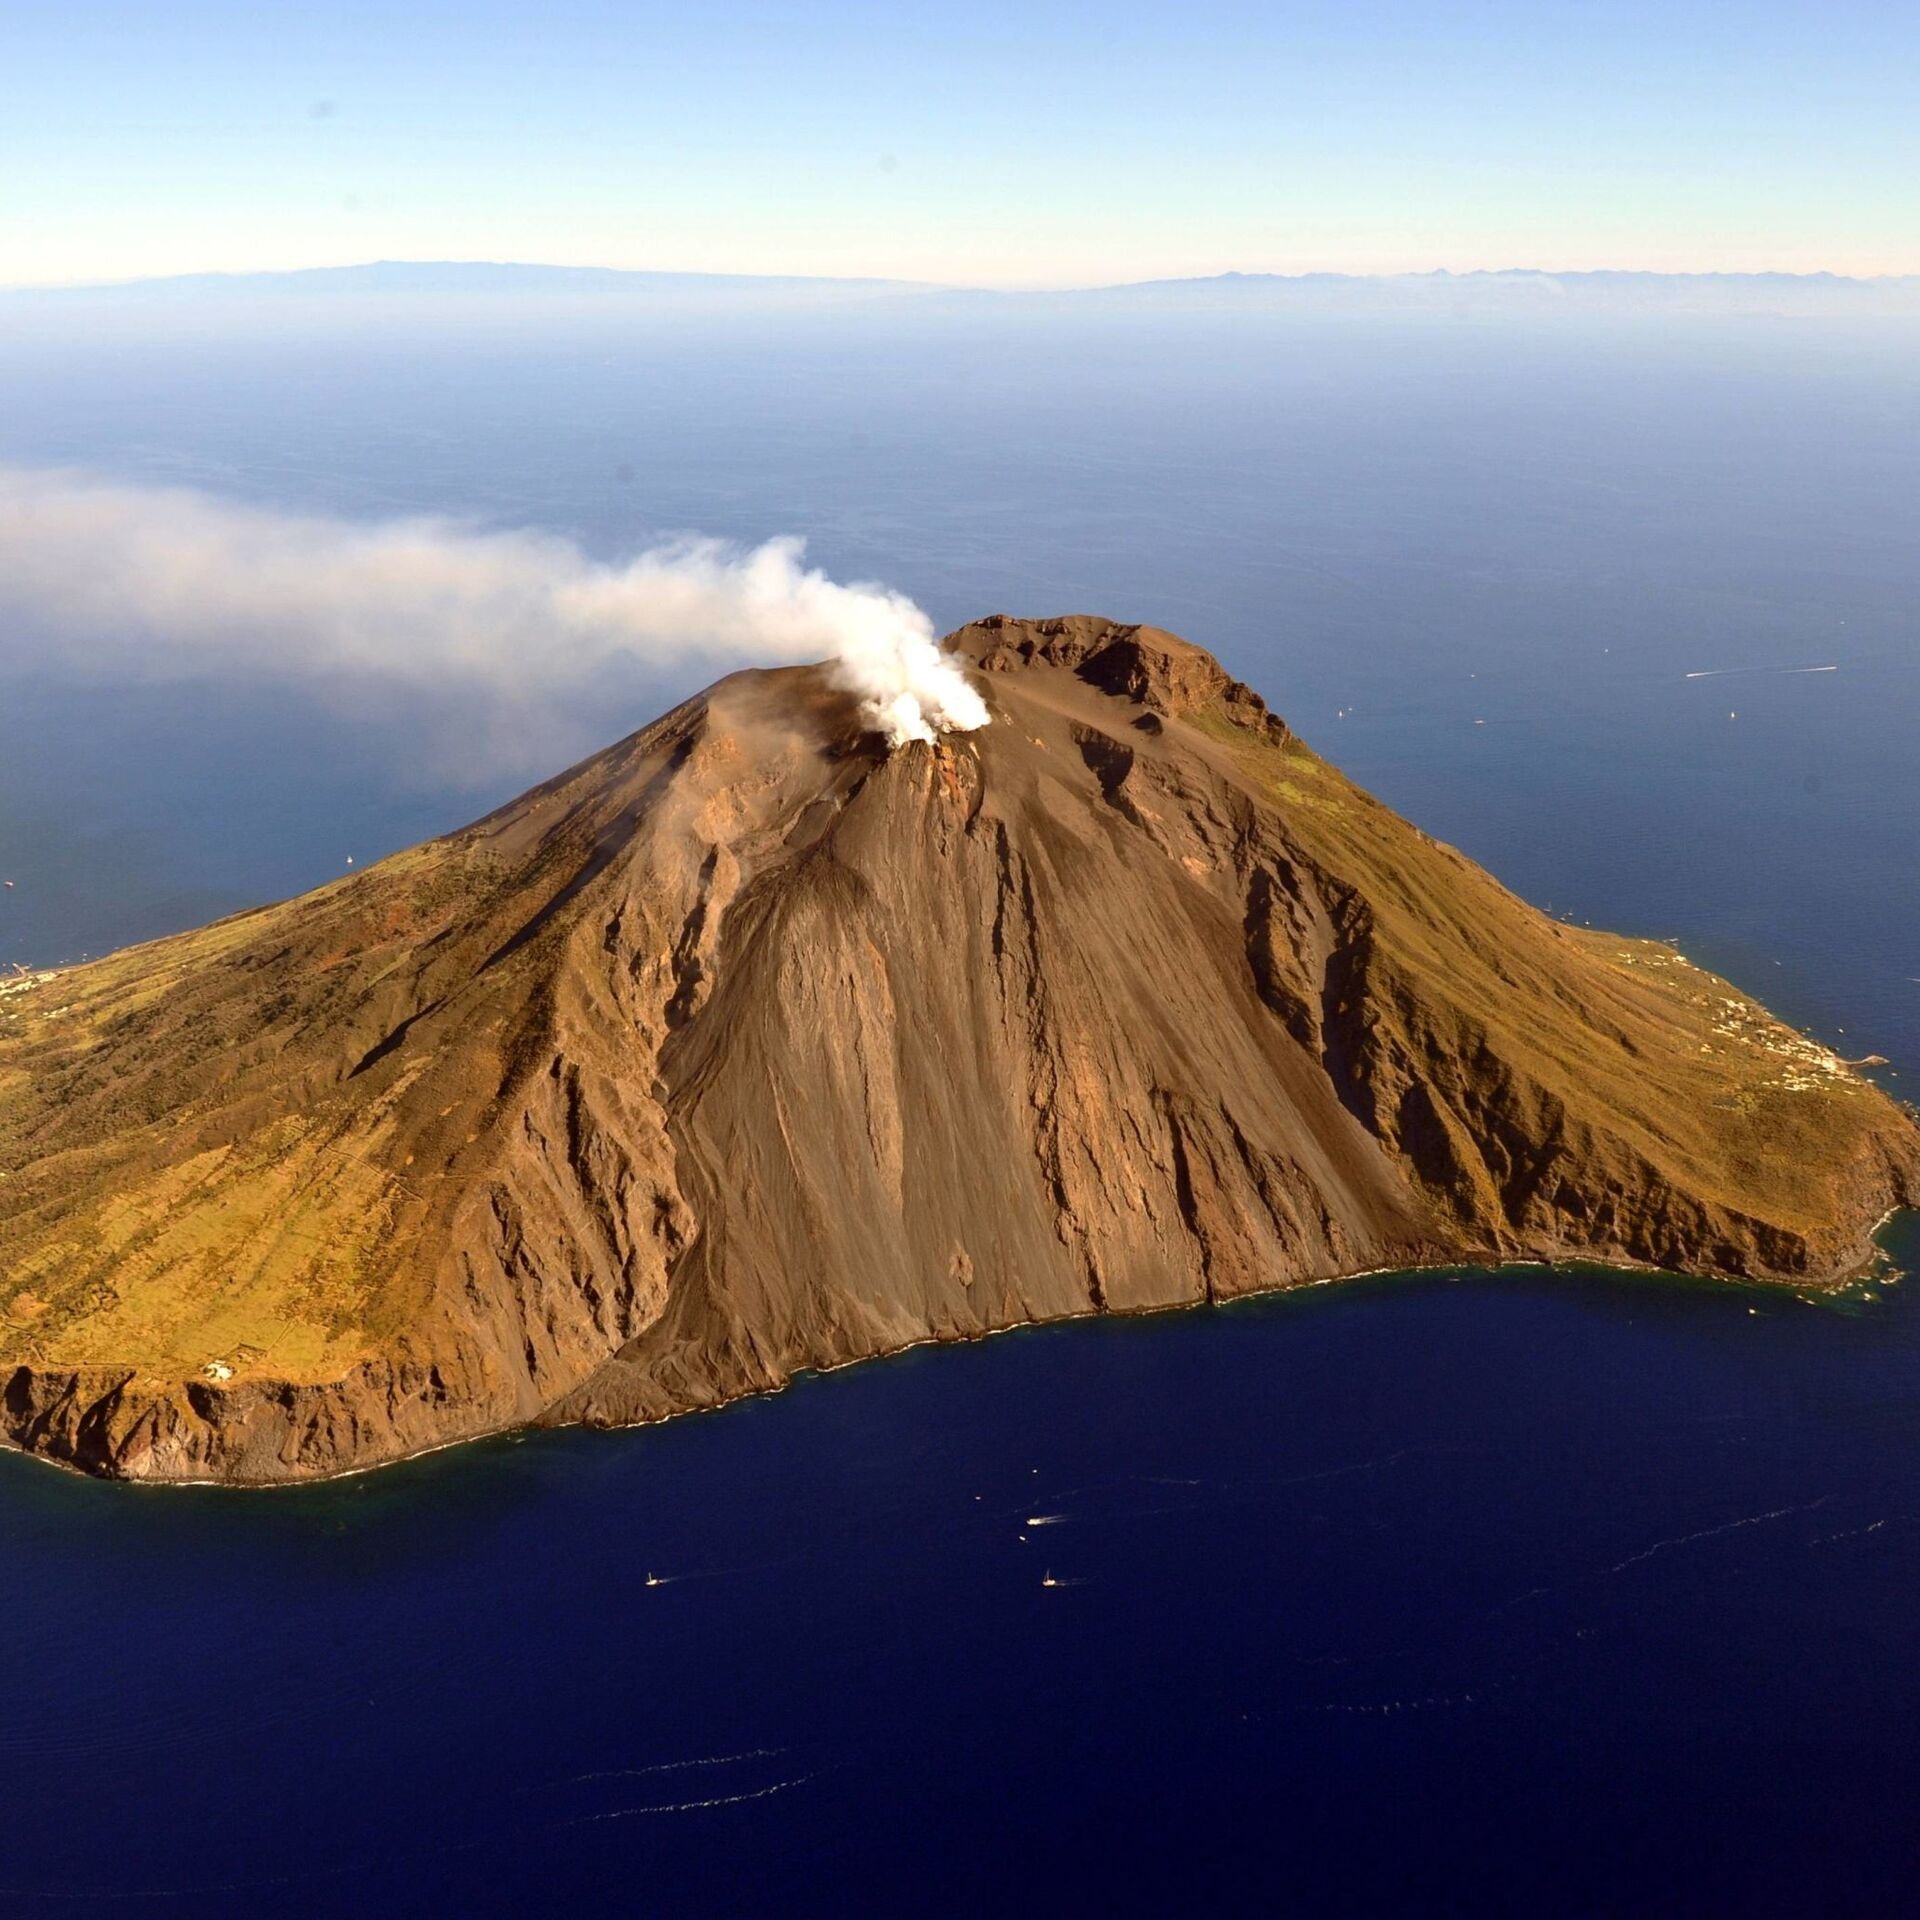 Volcano island. Остров вулкан Стромболи. Сицилия остров Стромболи. Вулкан Стромболи в Италии. Вулкан Уайт-Айленд.